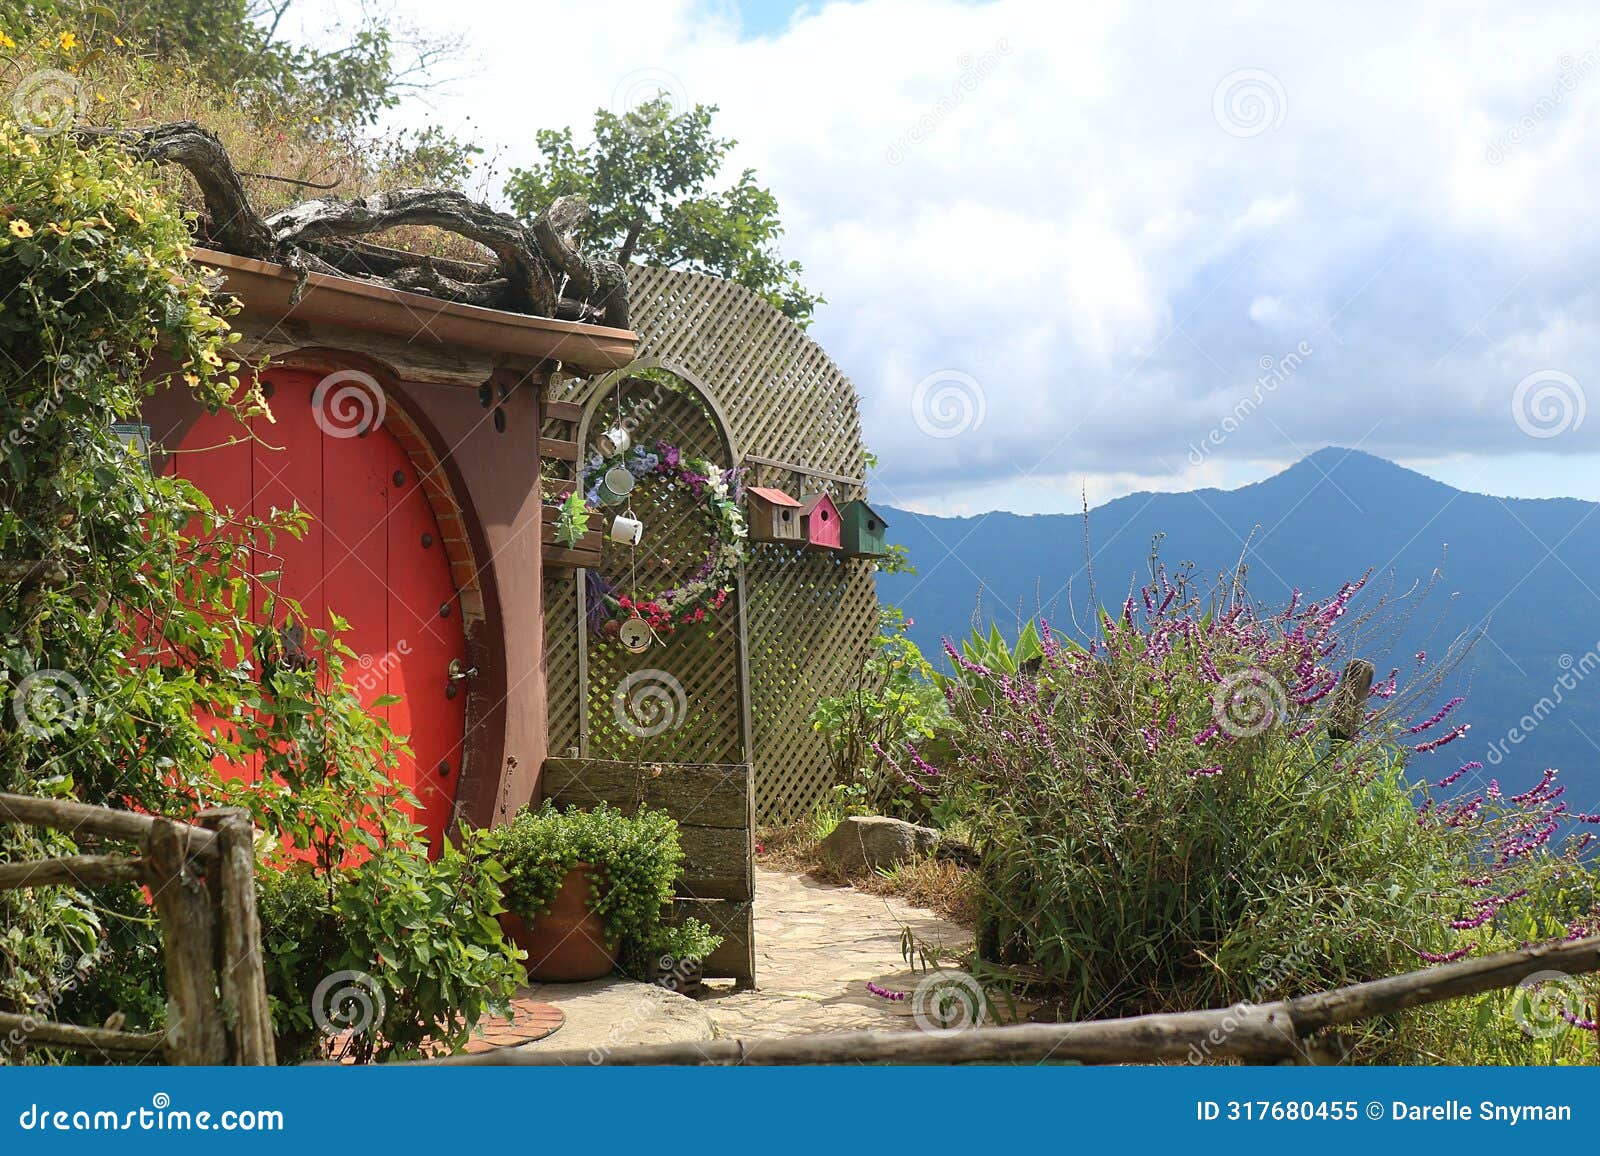 hobbit hole at hobbitenango guatemala